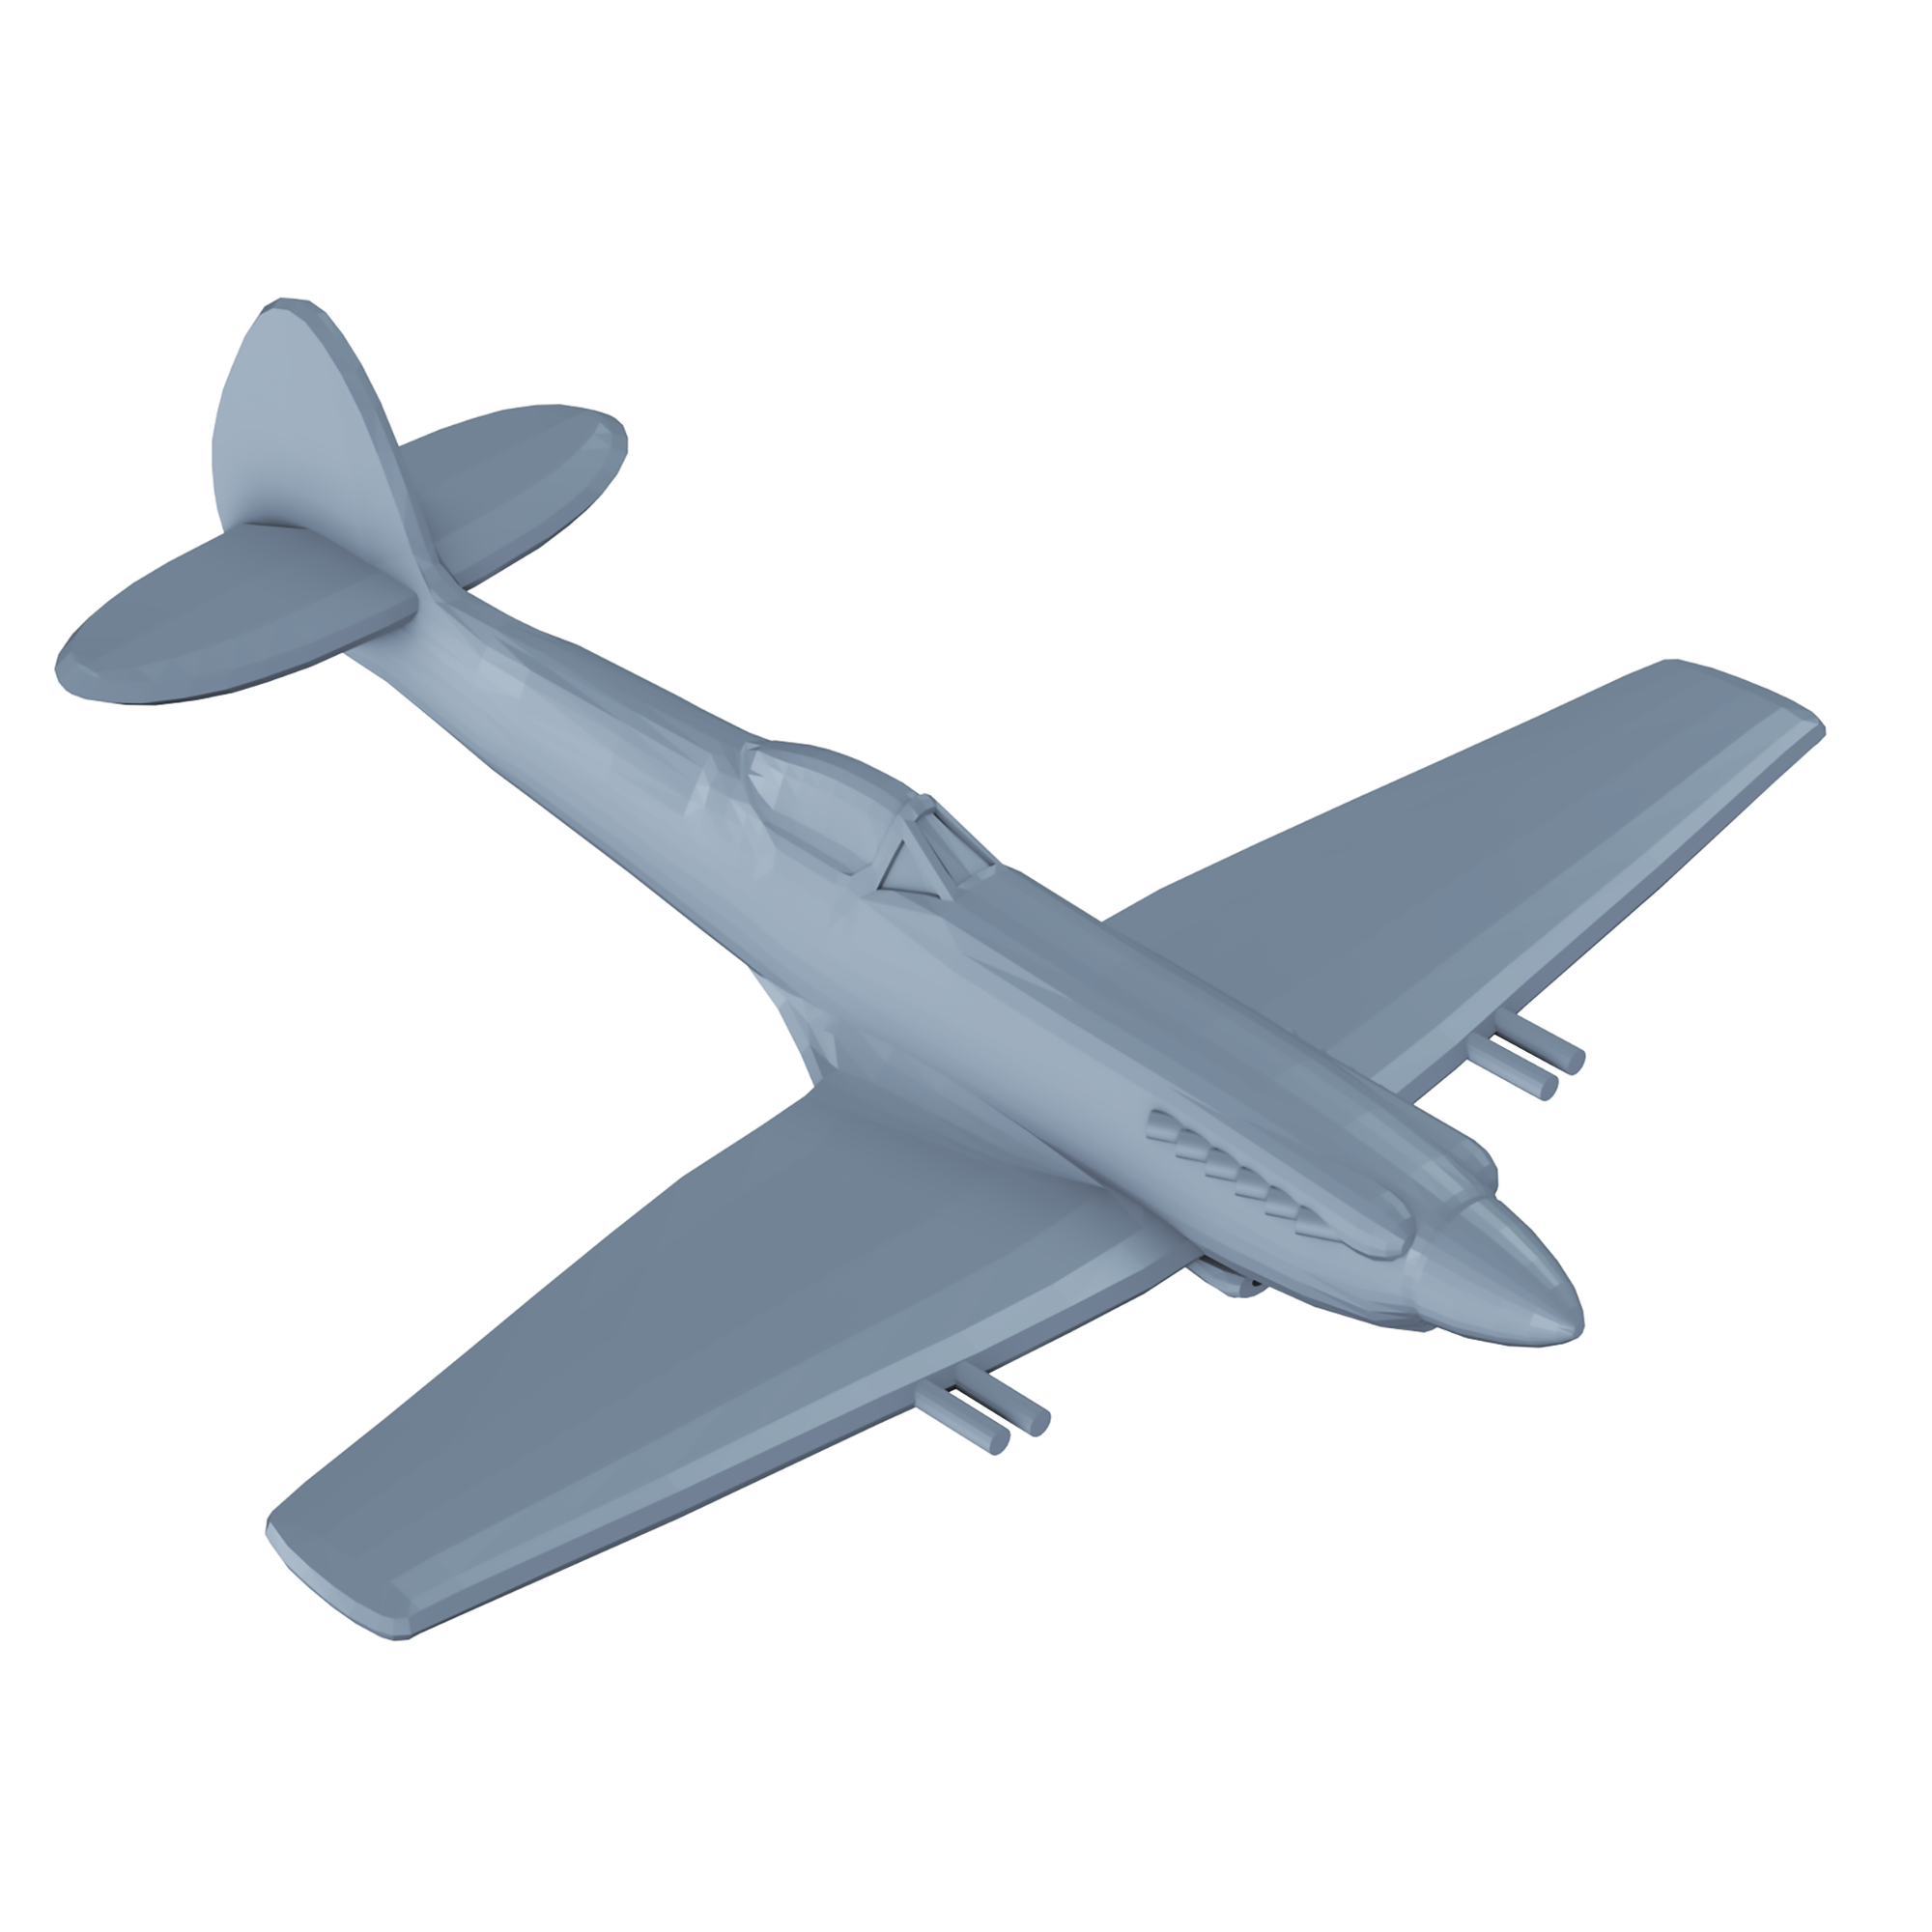 United Kingdom - WWII - Aircraft